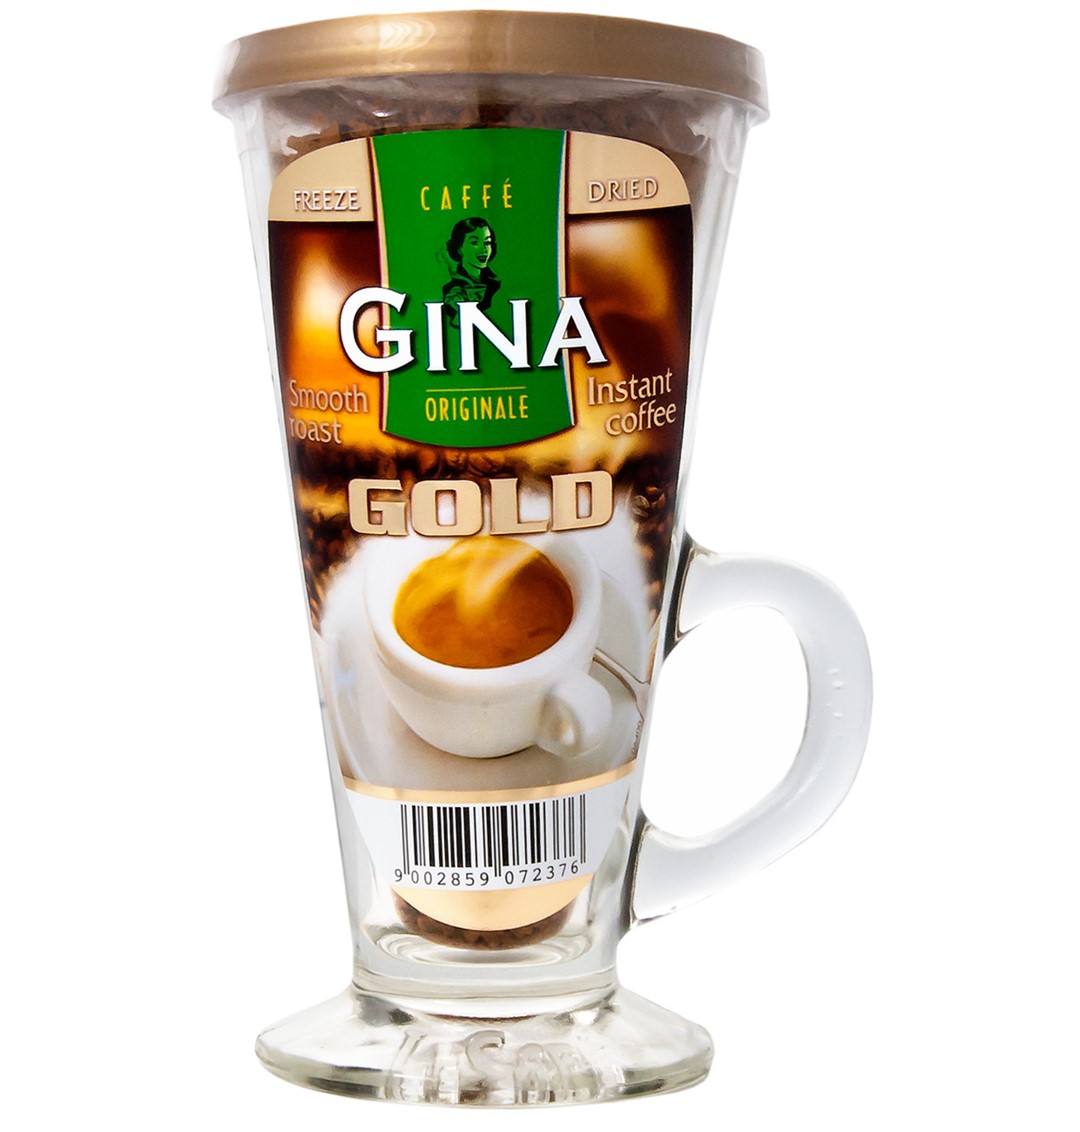 Gina Orginale Gold + Szklanka 60g R